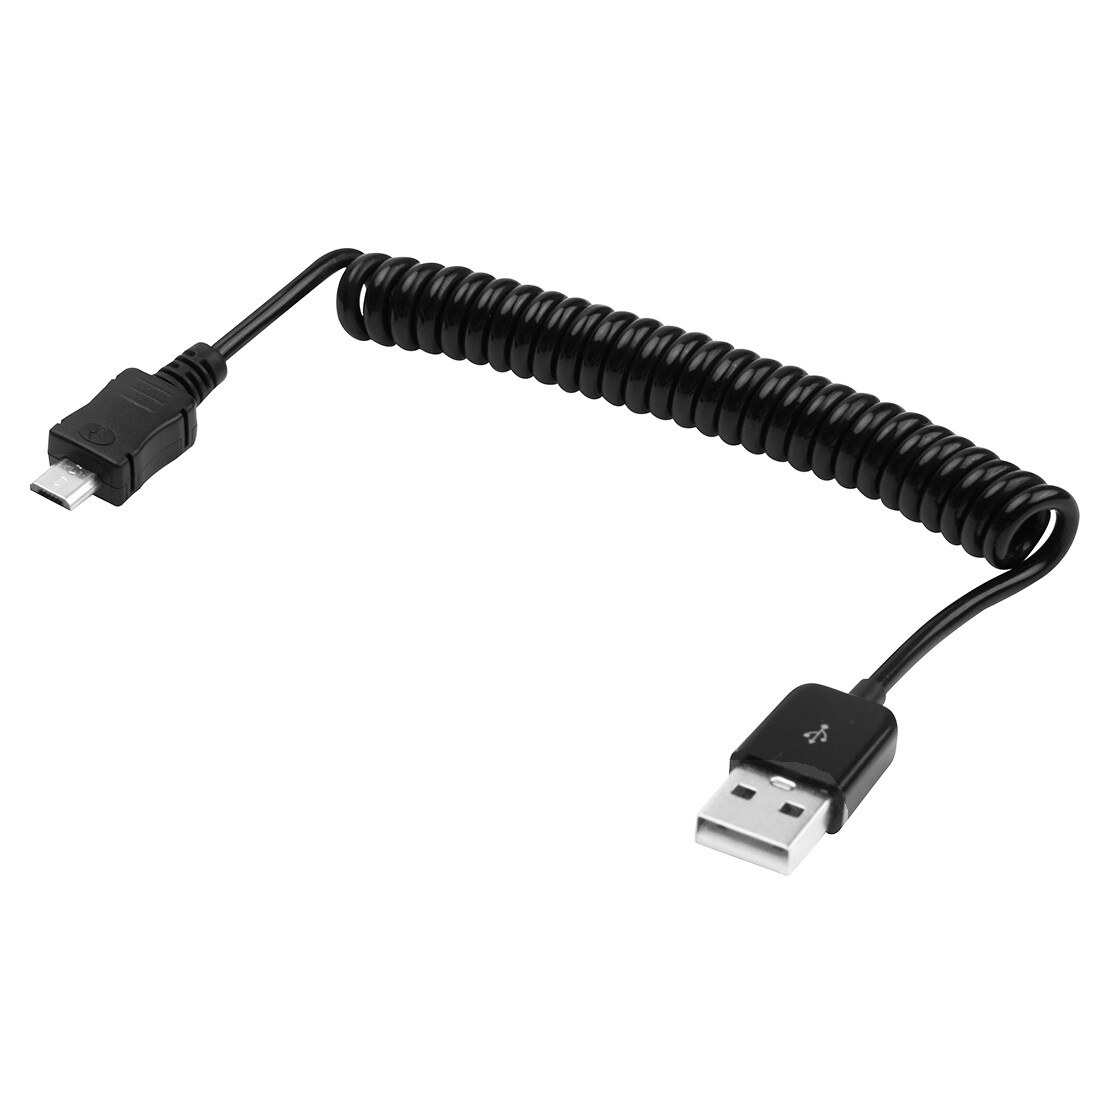 Flokefri uttrekkbar Micro-USB kabel - 24-90cm lang